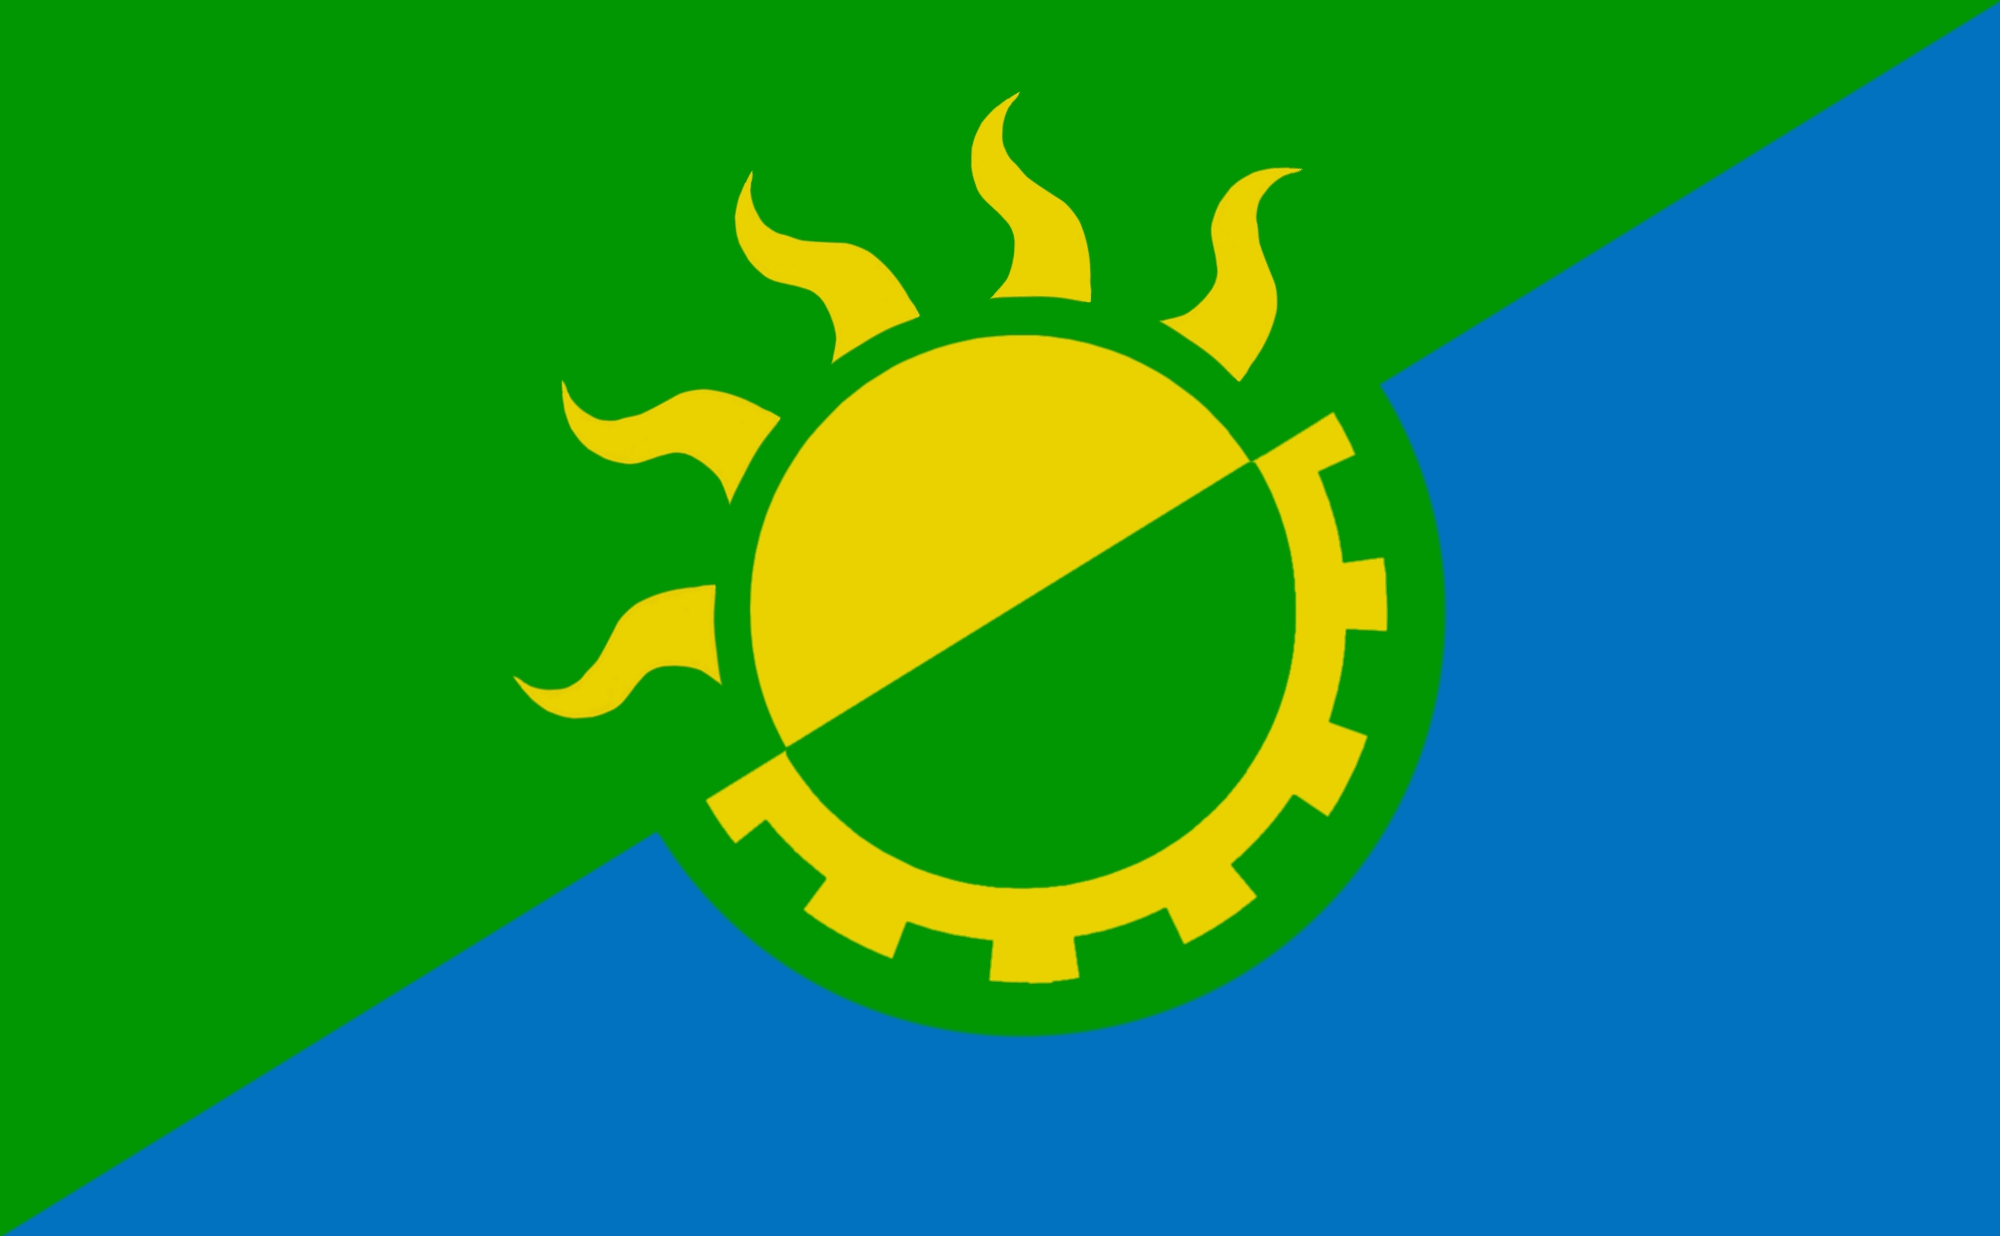 Solarpunk - Viquipèdia, l'enciclopèdia lliure